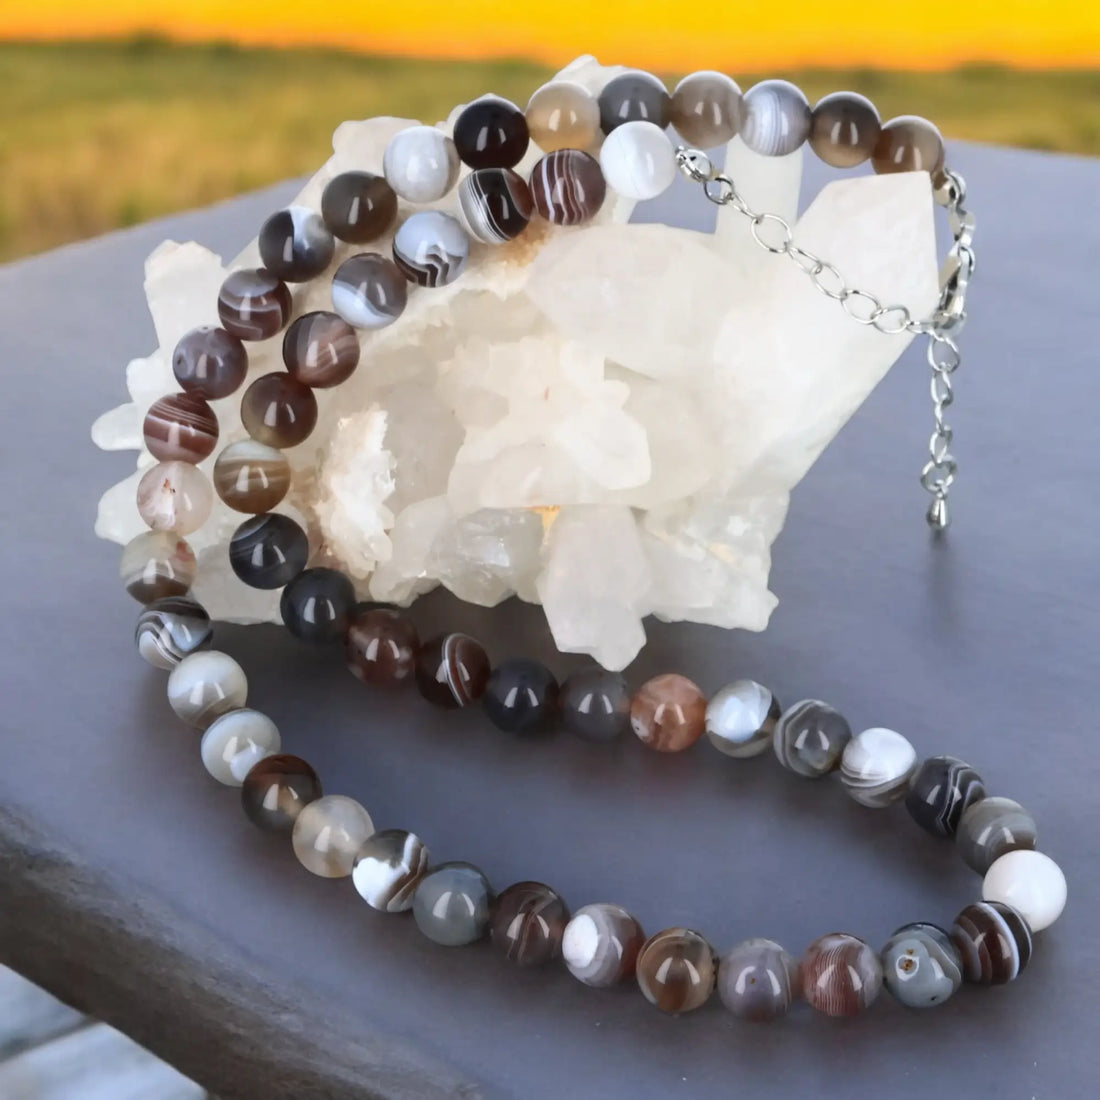 Collier en perle de pierre en agate reposant délicatement sur un fond blanc, mettant en valeur ses couleurs vibrantes et ses motifs naturels